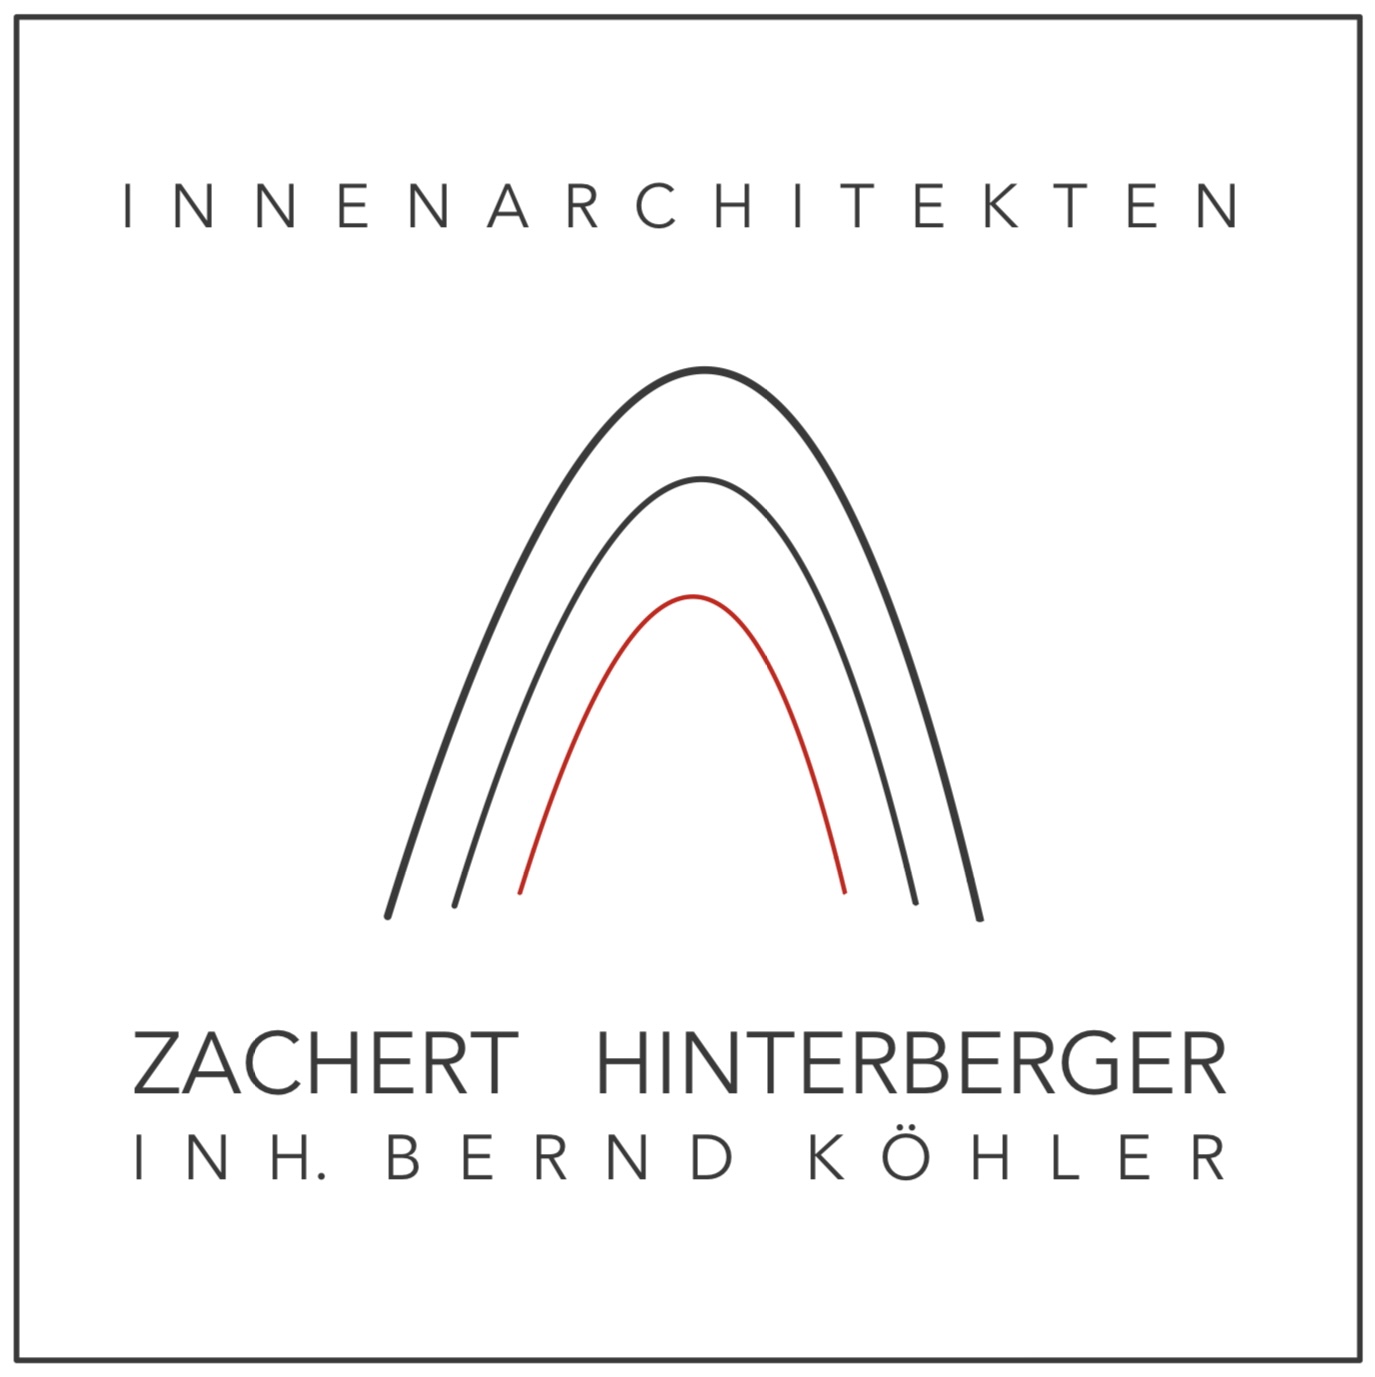 Zachert Hinterberger